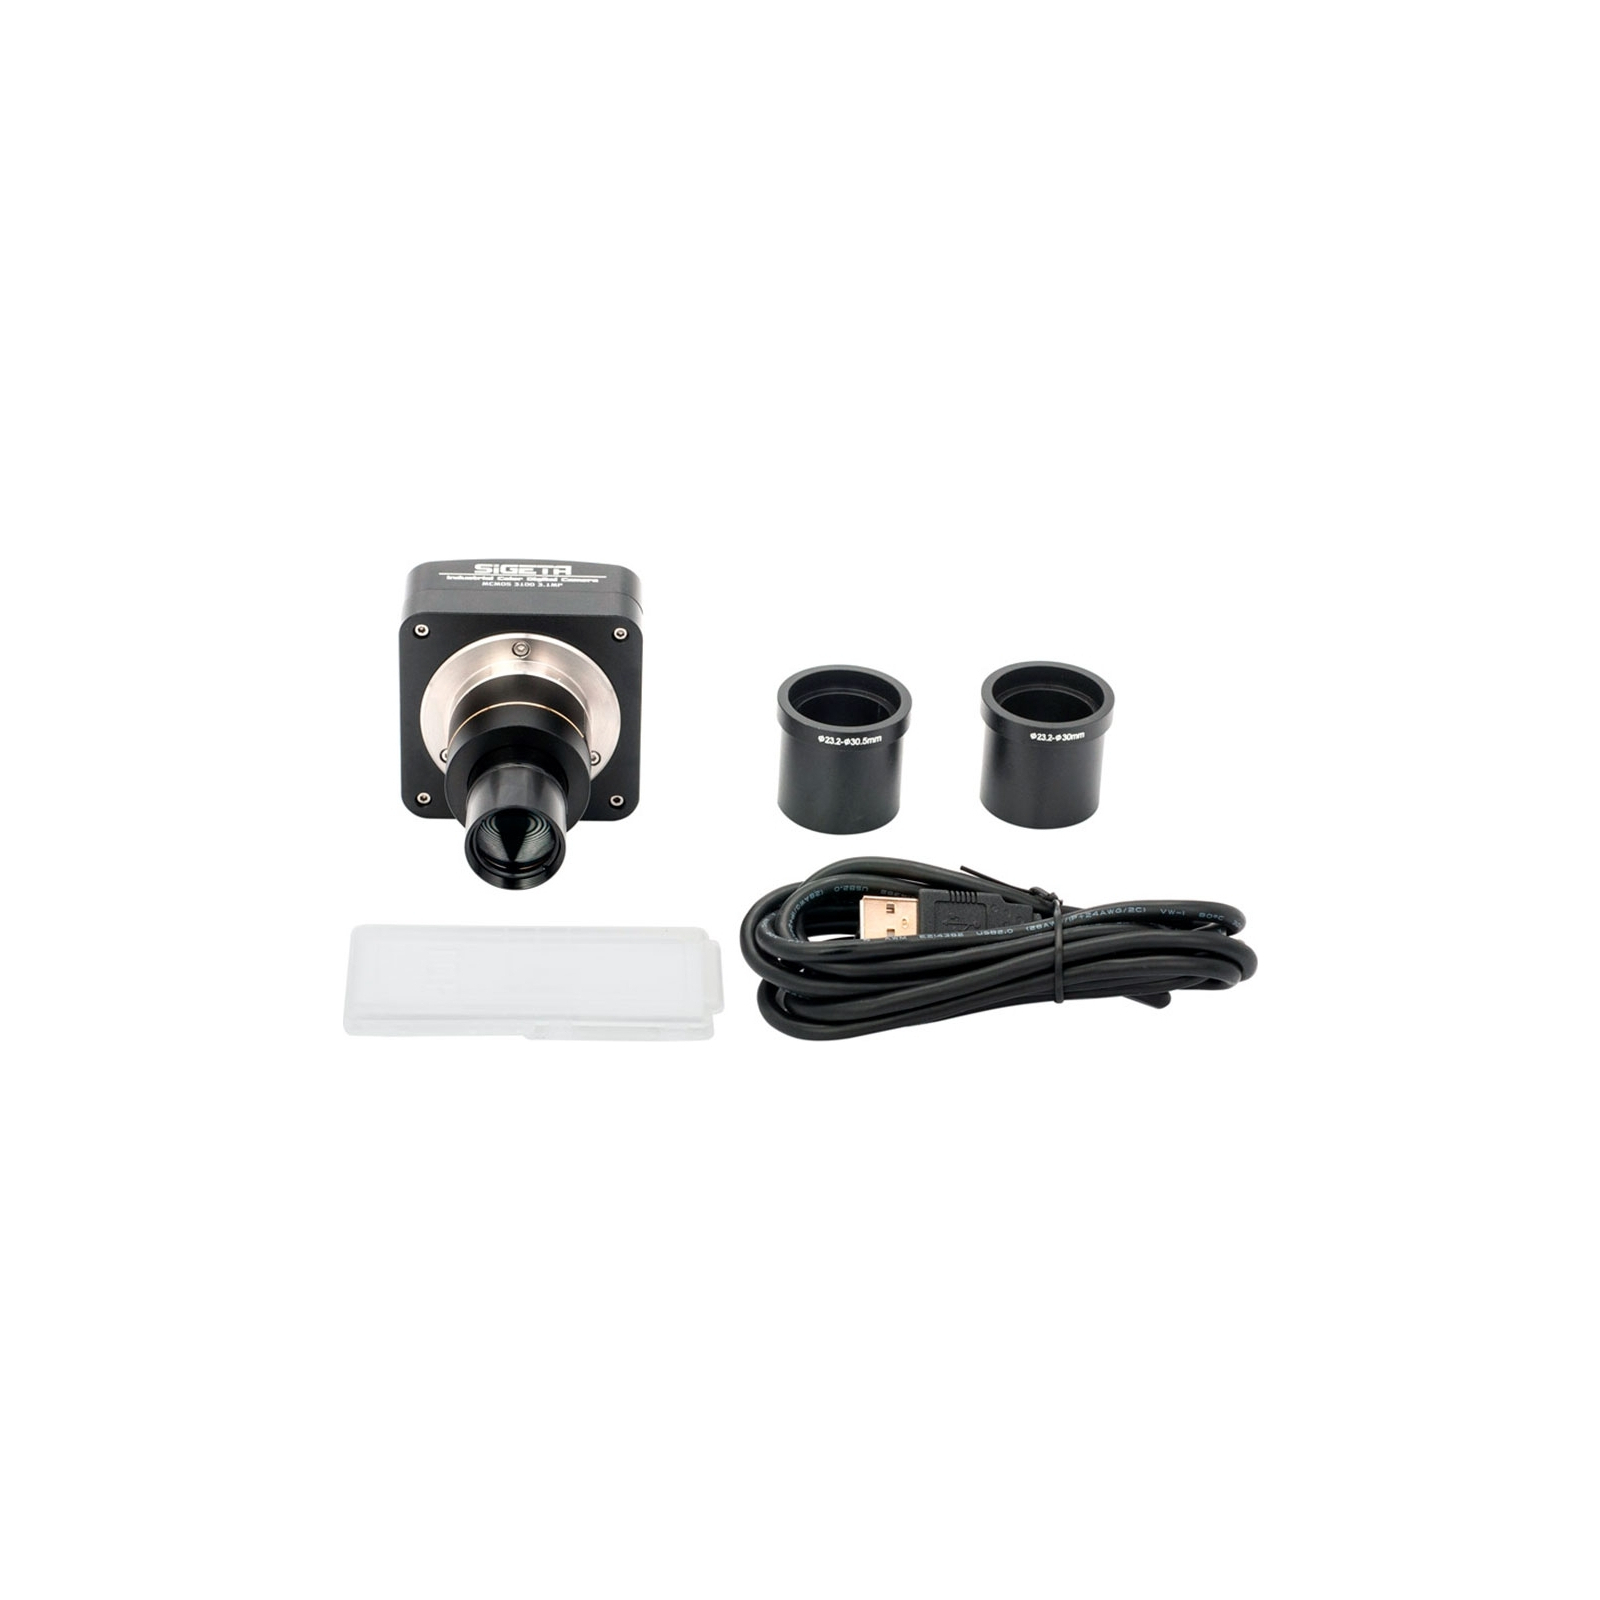 Цифровая камера для микроскопа Sigeta MCMOS 3100 3.1MP USB2.0 (65672) изображение 4